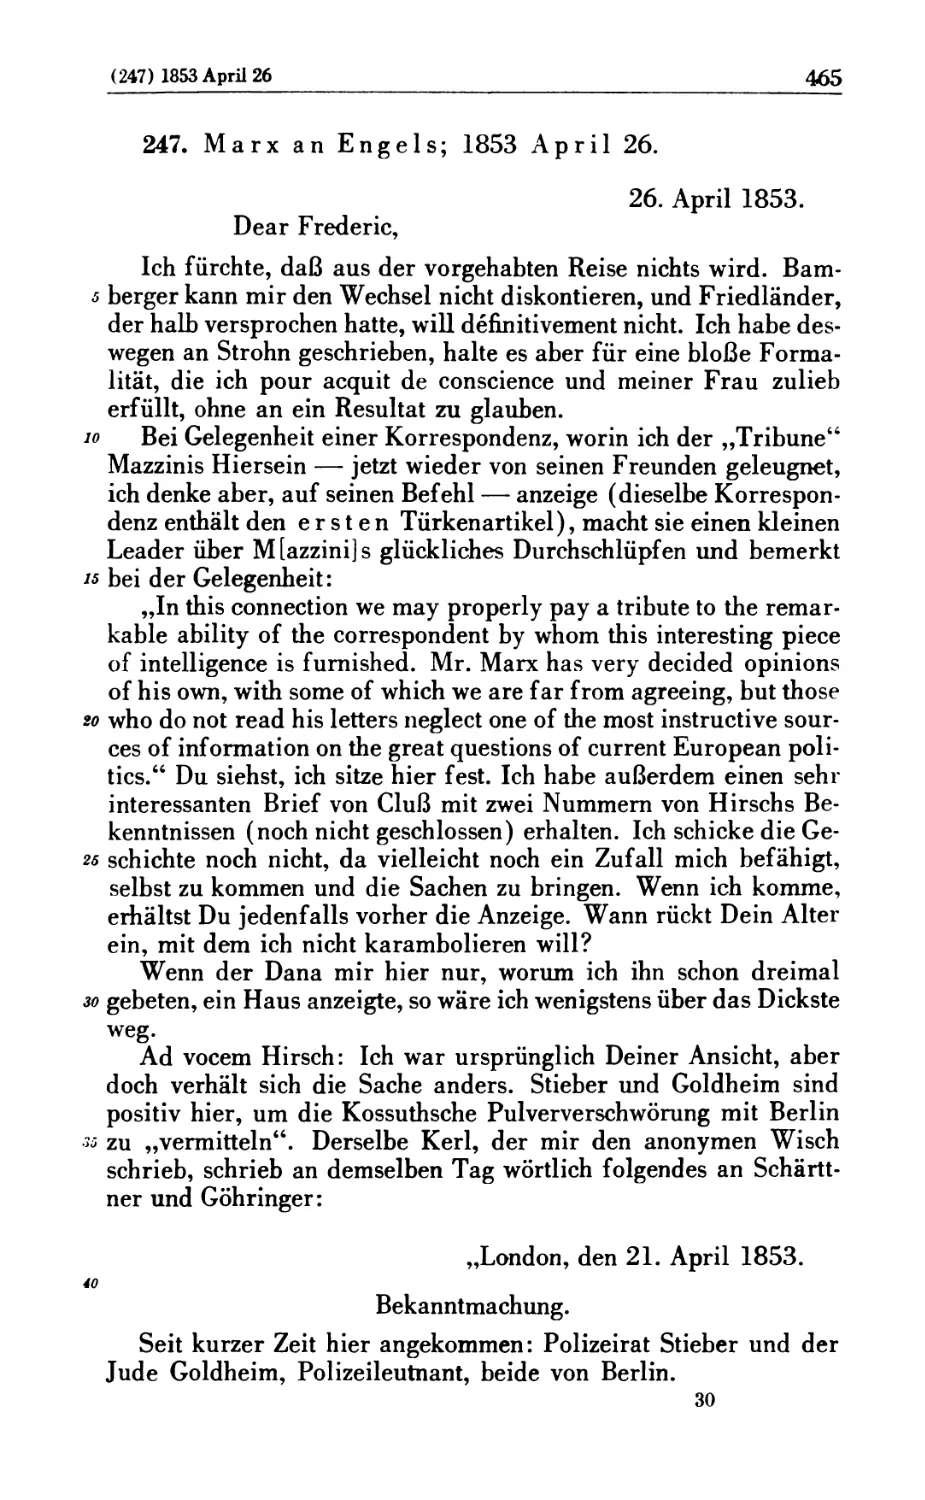 247. Marx an Engels; 1853 April 26